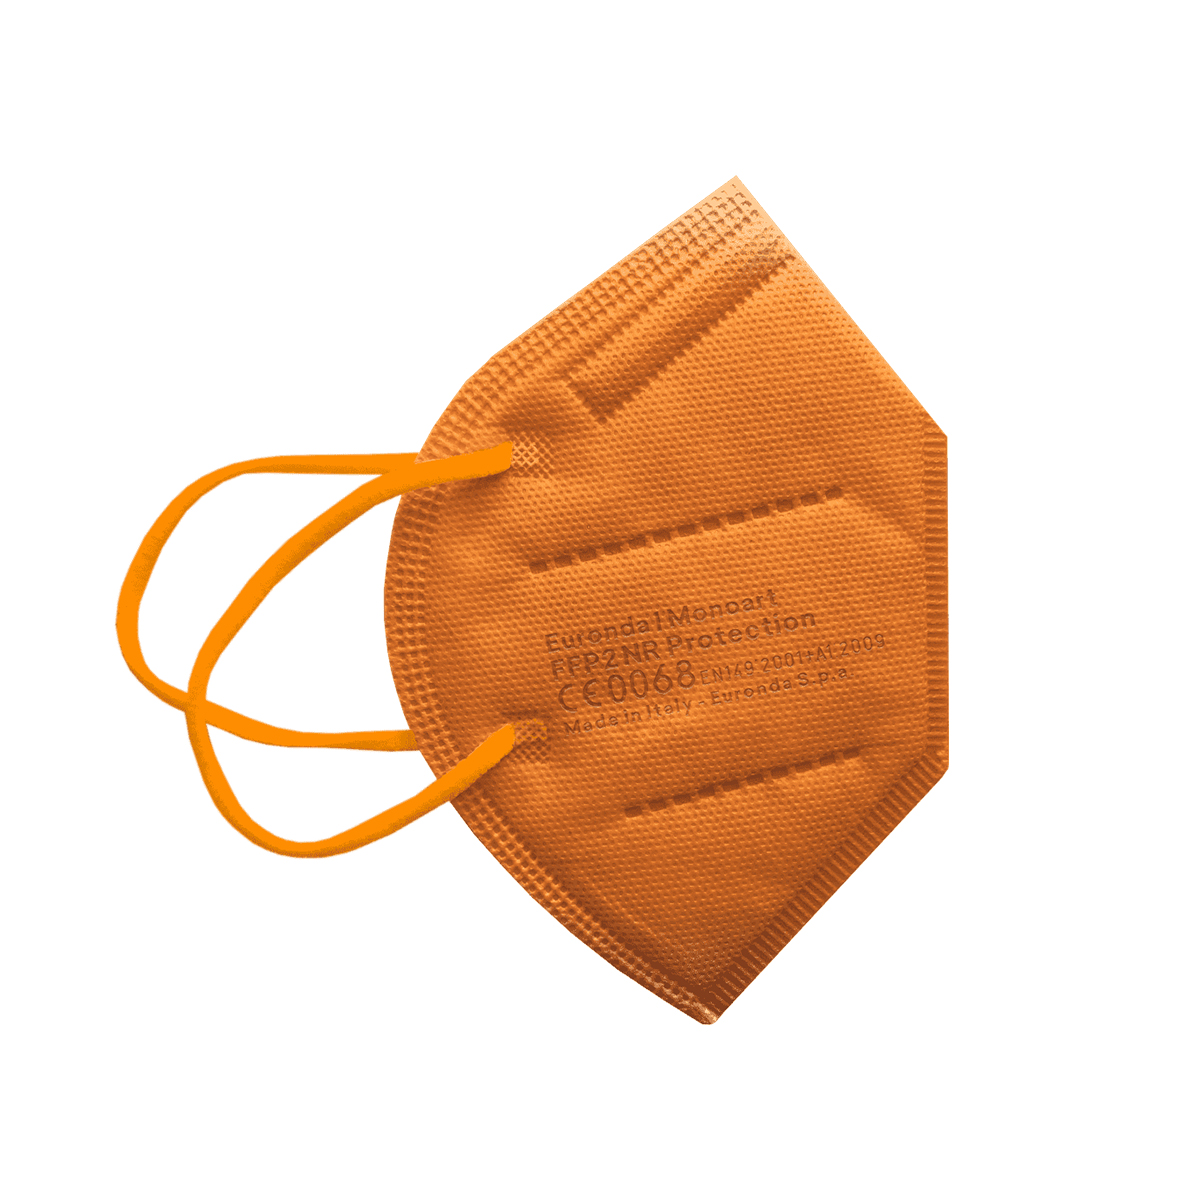 Monoart Schutzmaske FFP2 NR Farbe: orange (Euronda)